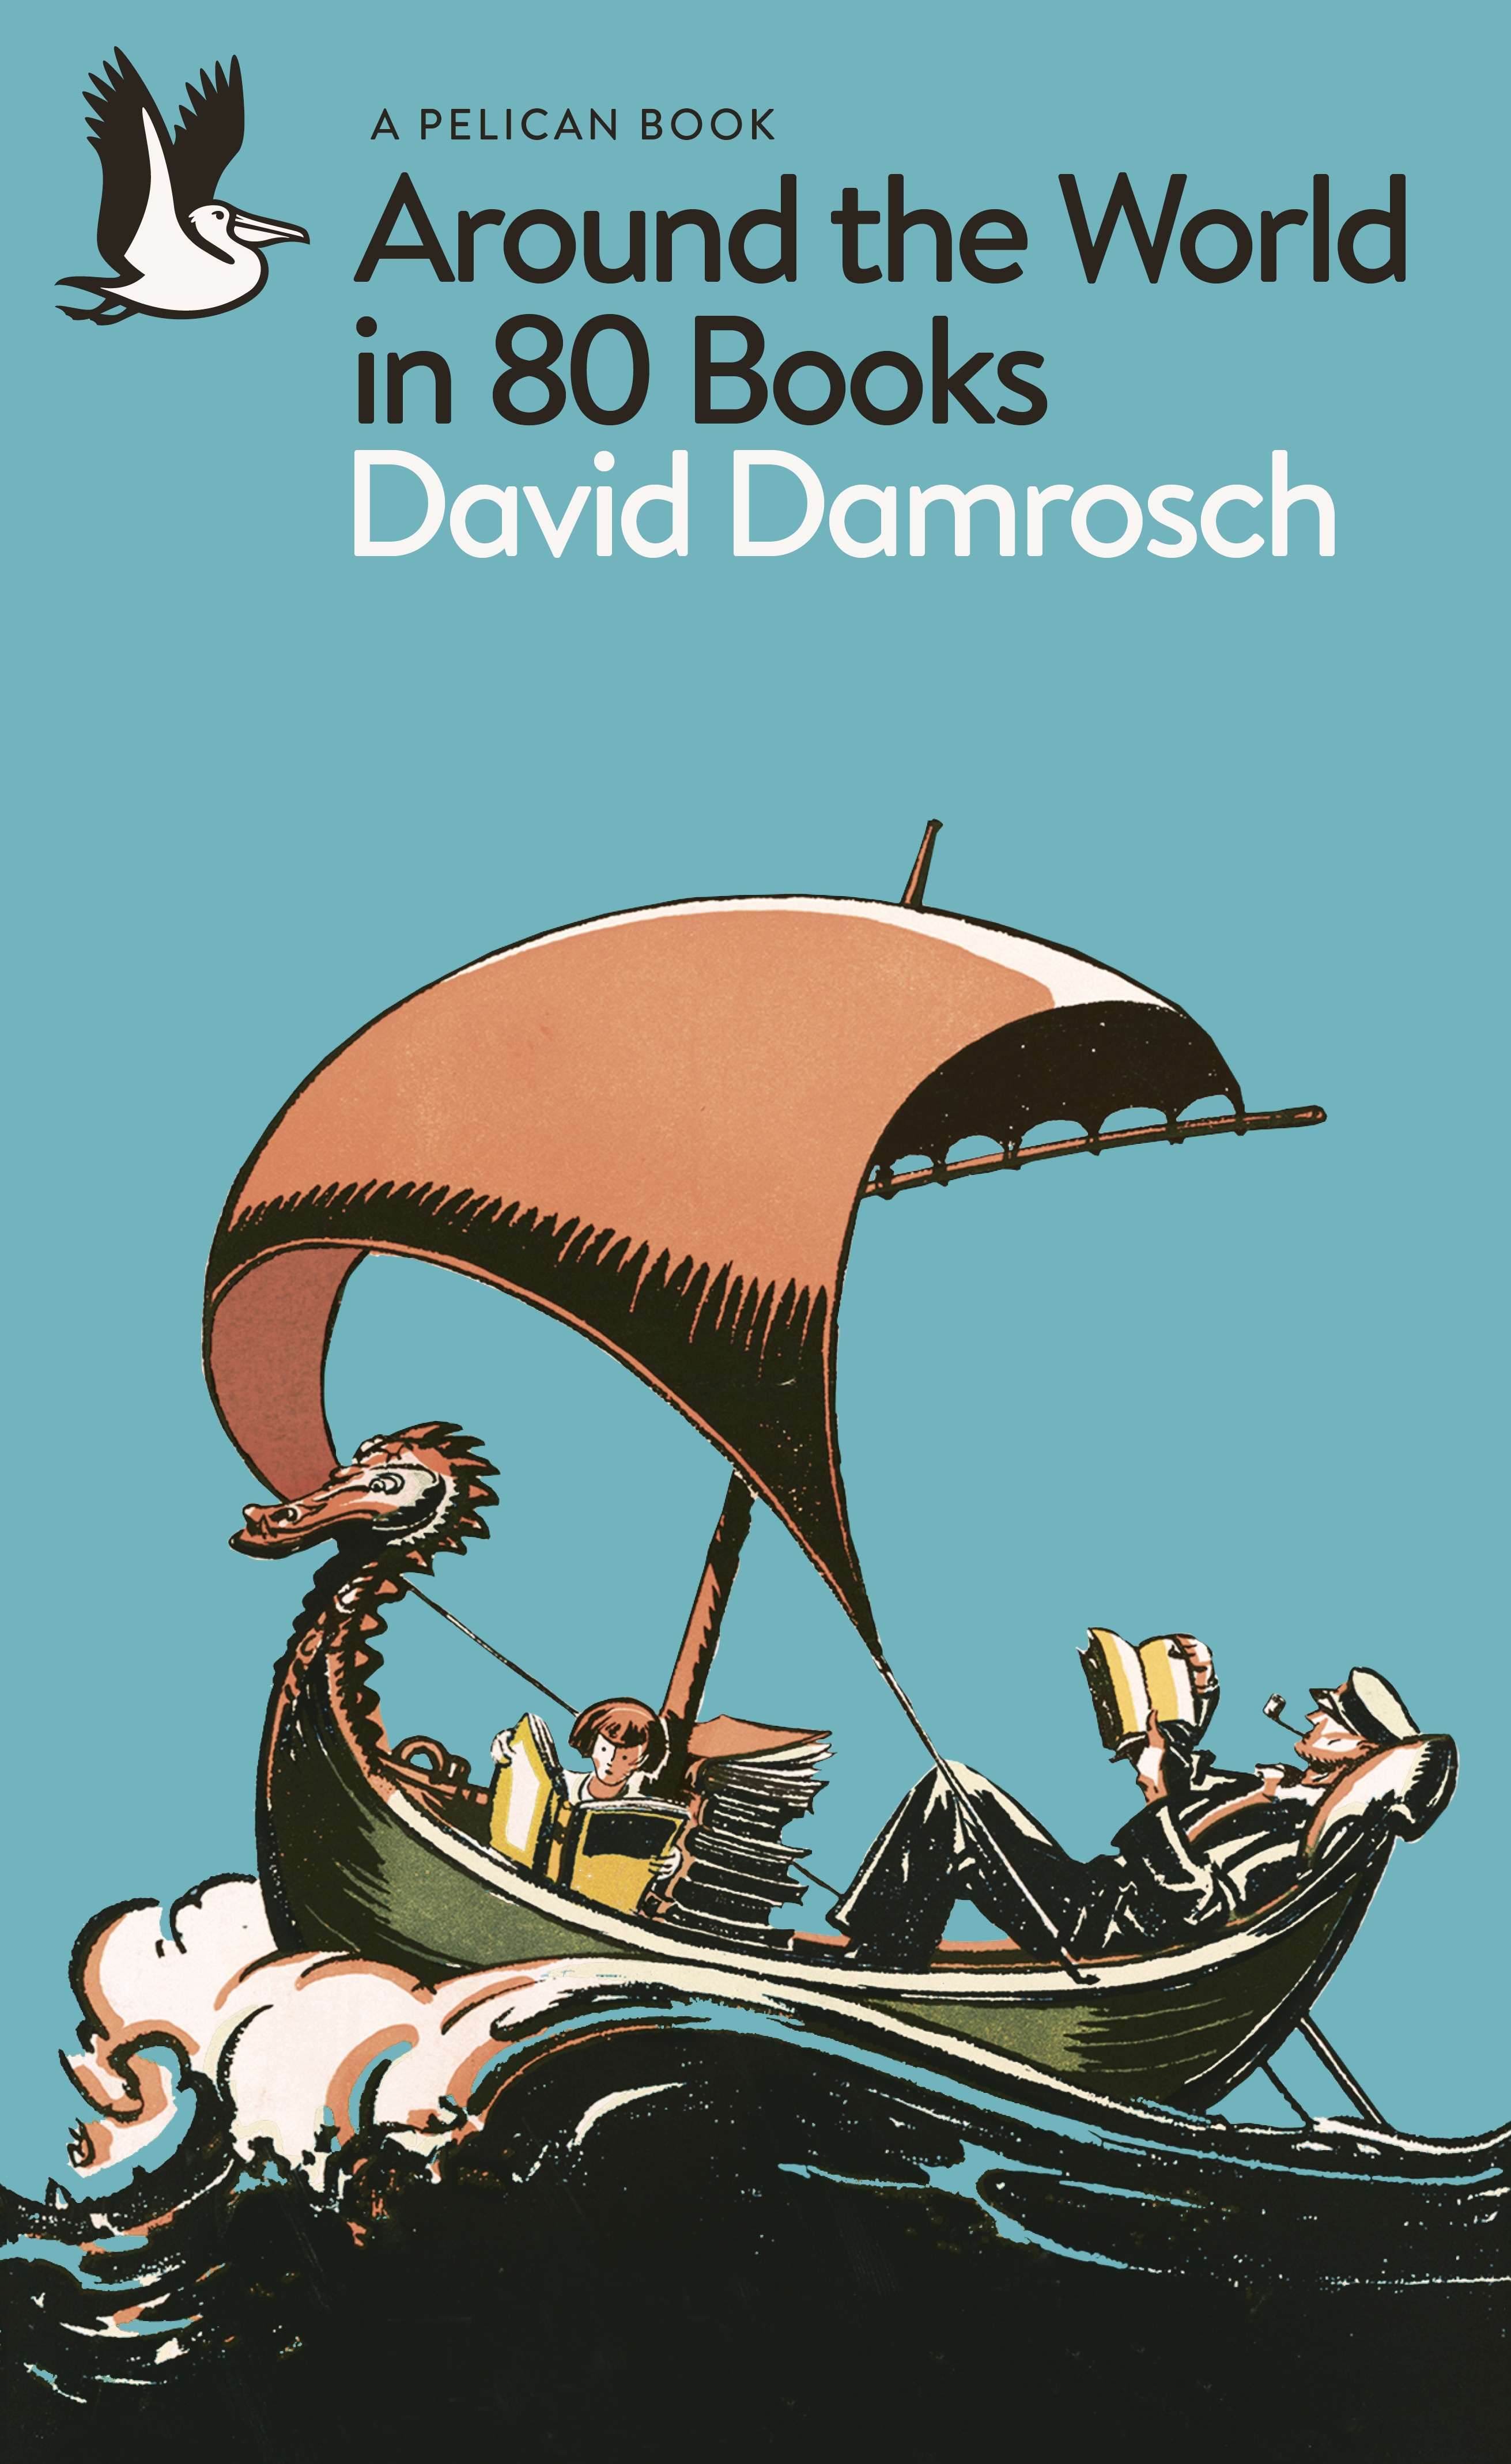 Book “Around the World in 80 Books” by David Damrosch — November 3, 2022